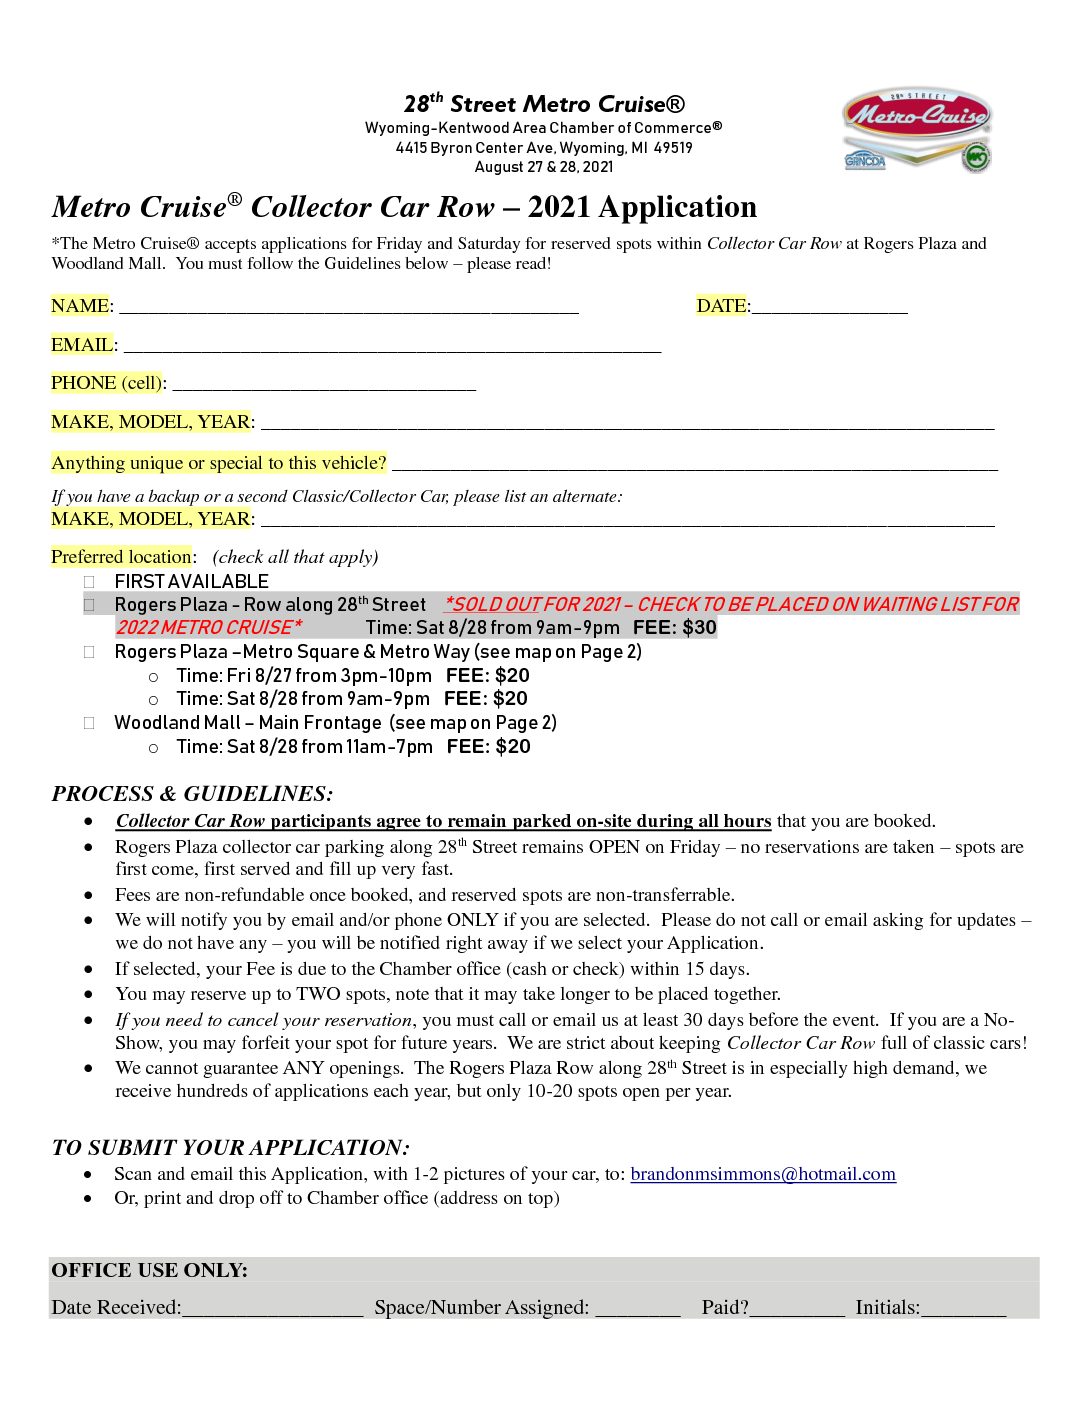 Collector Car Row Application